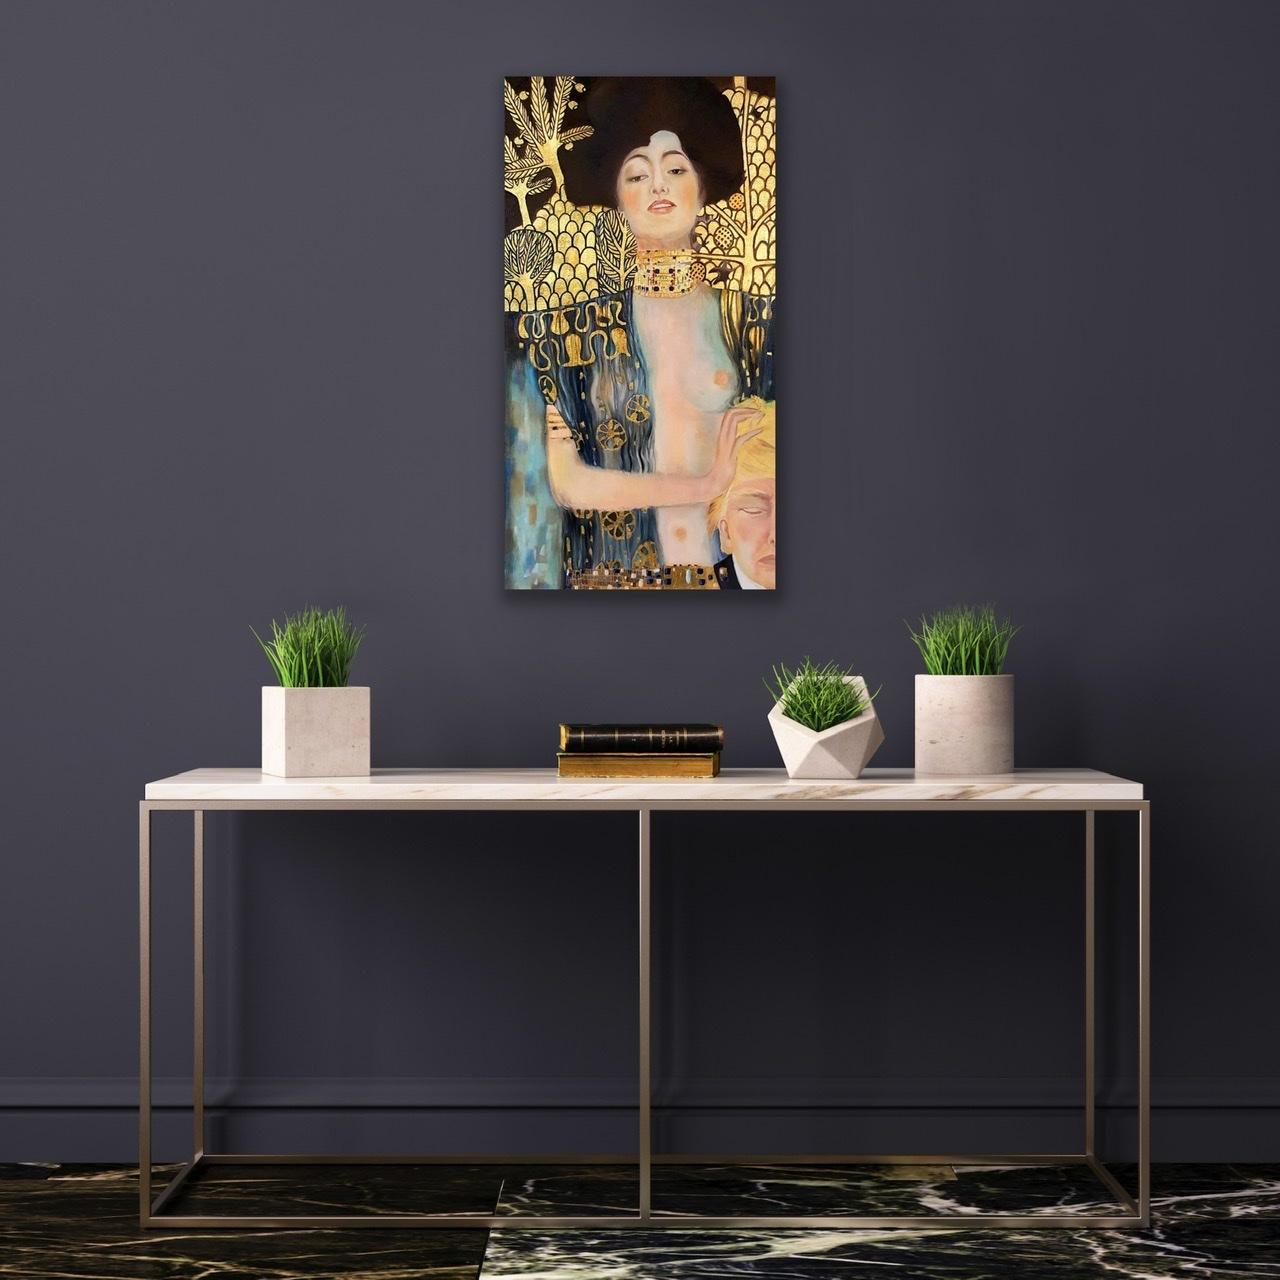 Dies ist meine Adaption von Gustav Klimts „Judith und der Kopf von Holofernes“. Das Gemälde von Kelim stellt den biblischen Charakter von Judith dar, die den ausgestorbenen Kopf von Holofernes hält. Judith erscheint als Gotts Instrument der